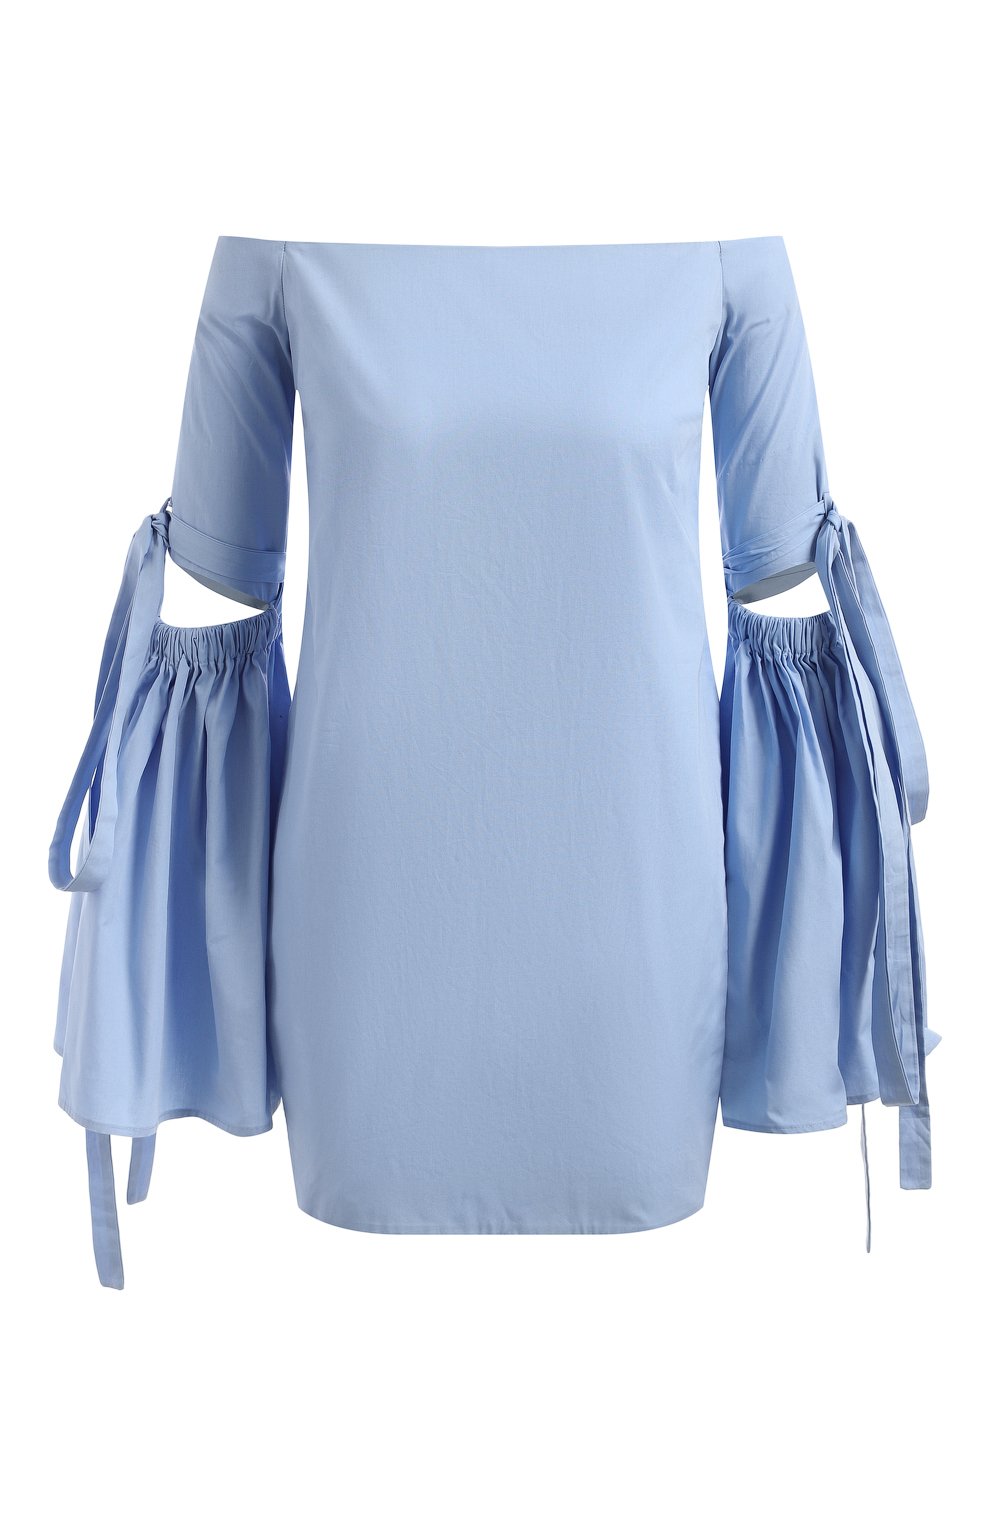 Хлопковая блузка | Ellery | Голубой - 1